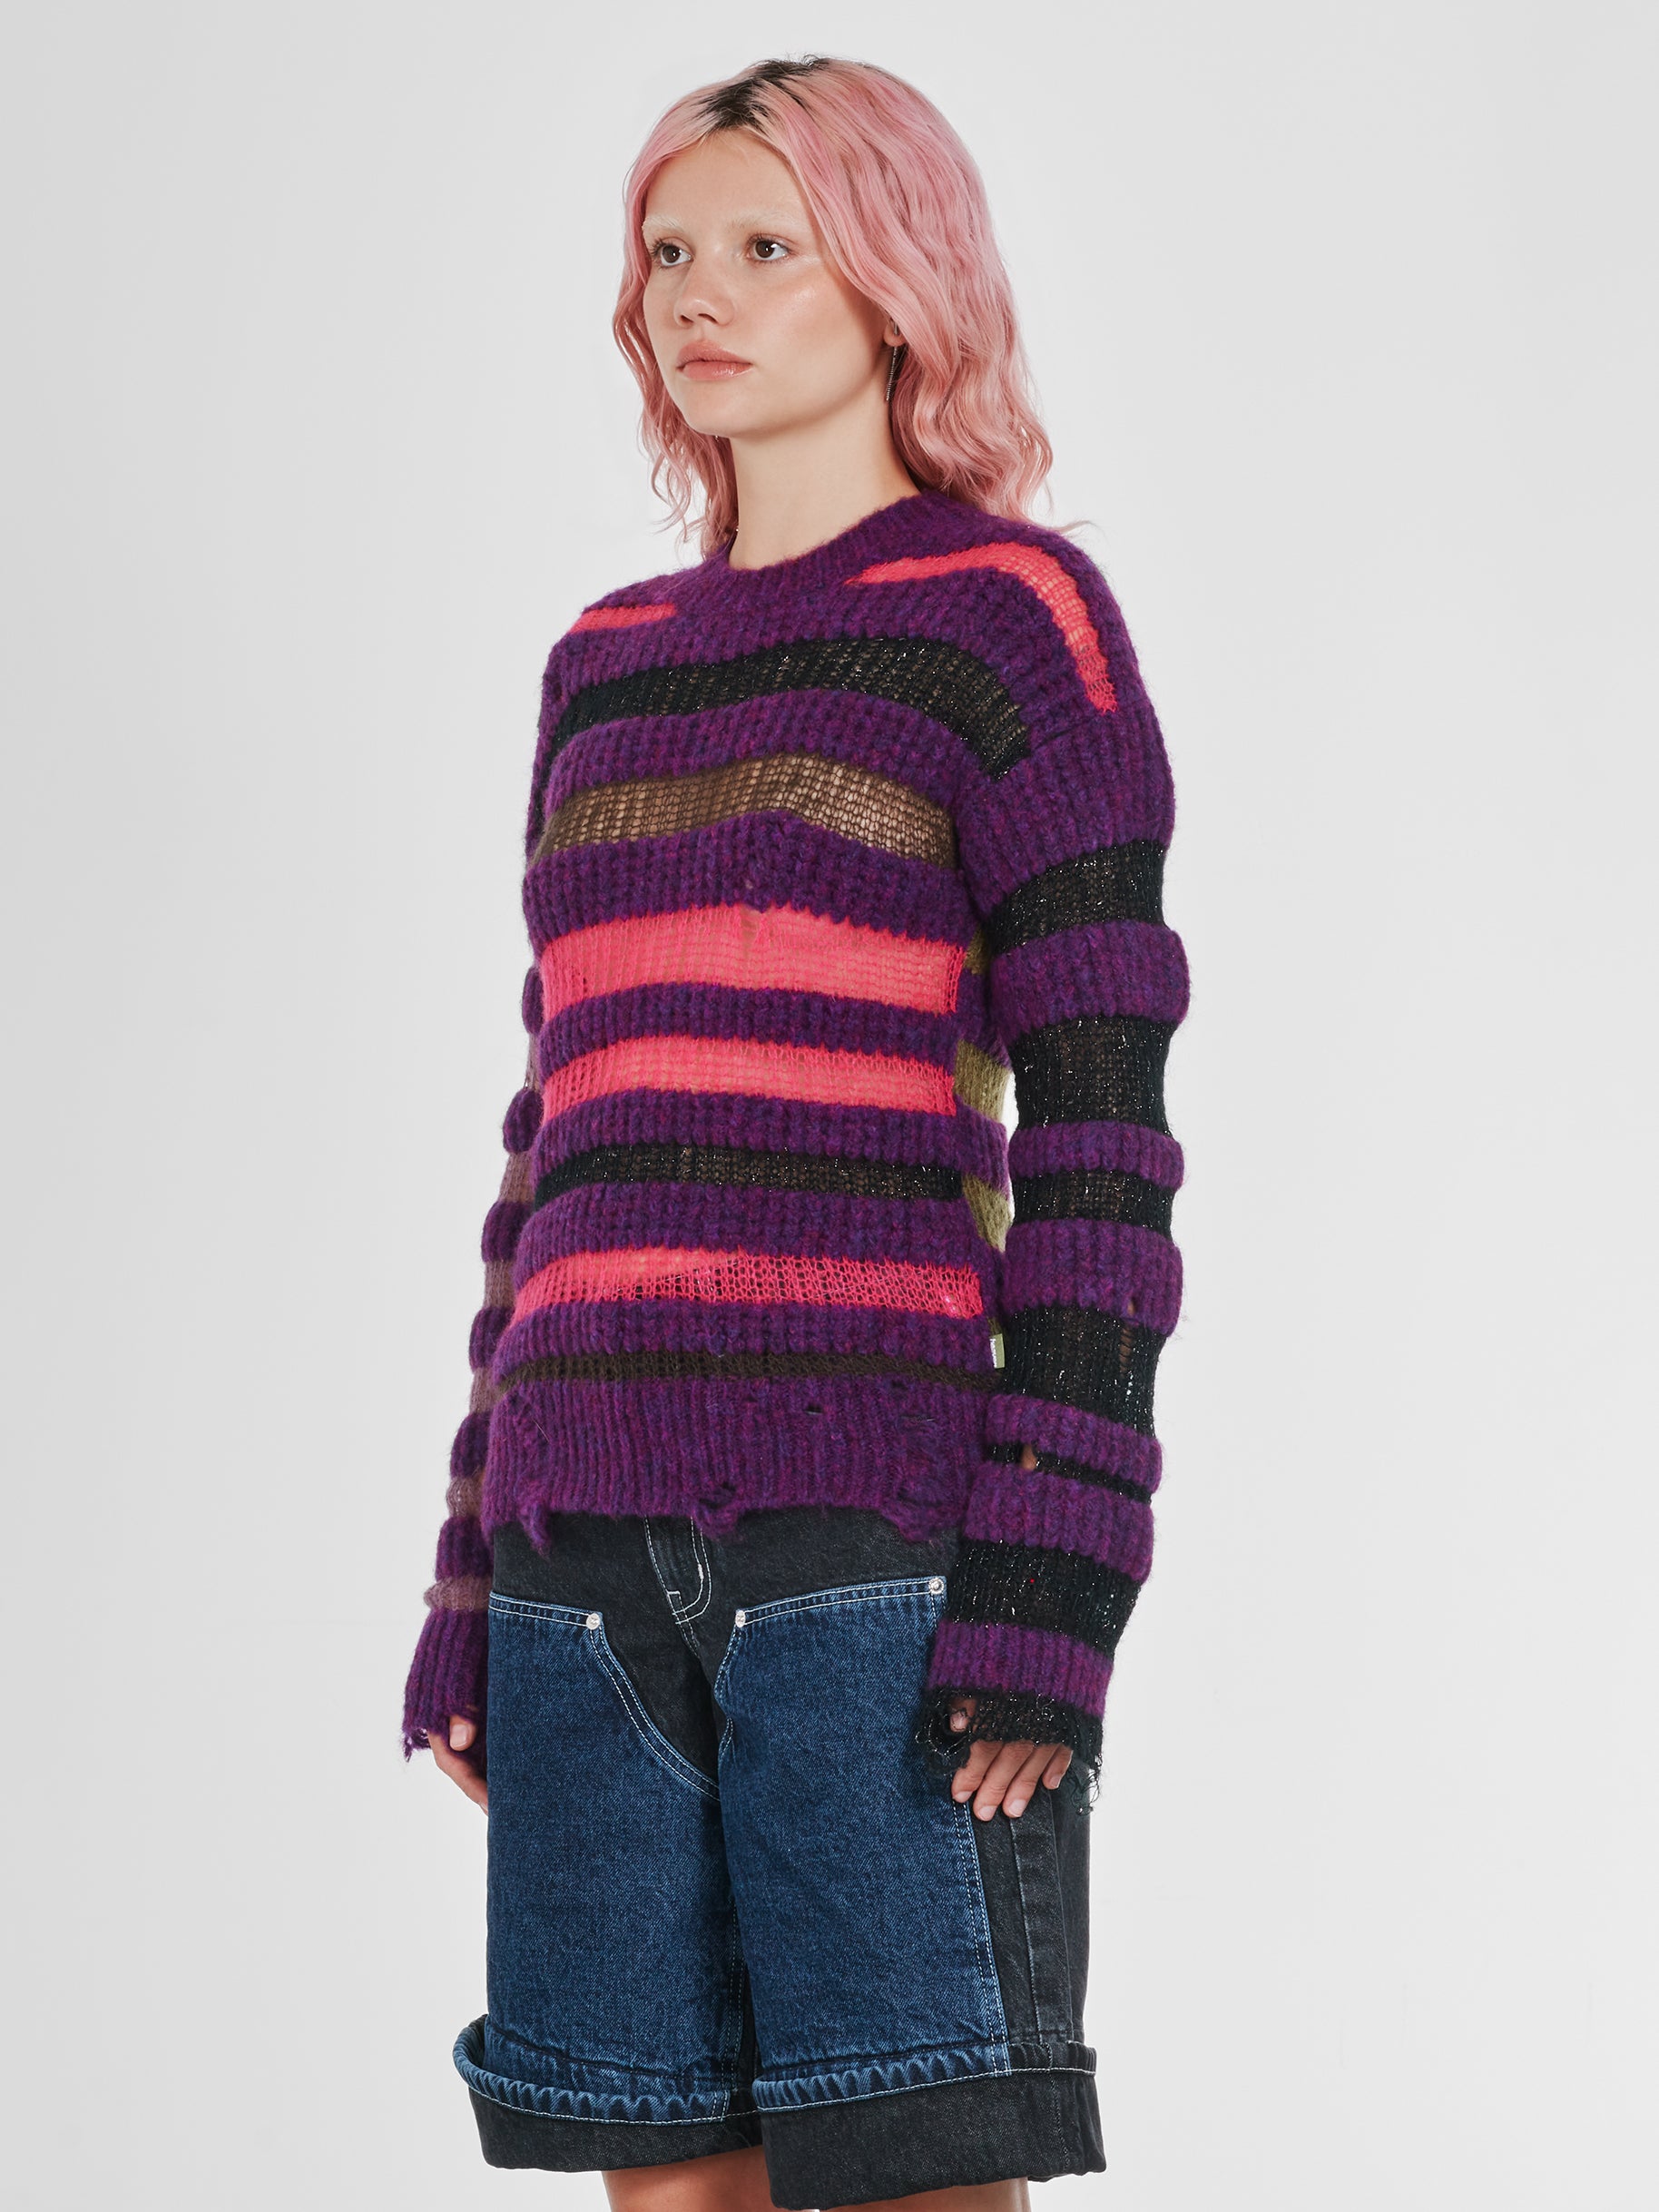 Heaven By Marc Jacobs - Women’s Bumpy Stripe Sweater - (Purple) view 2